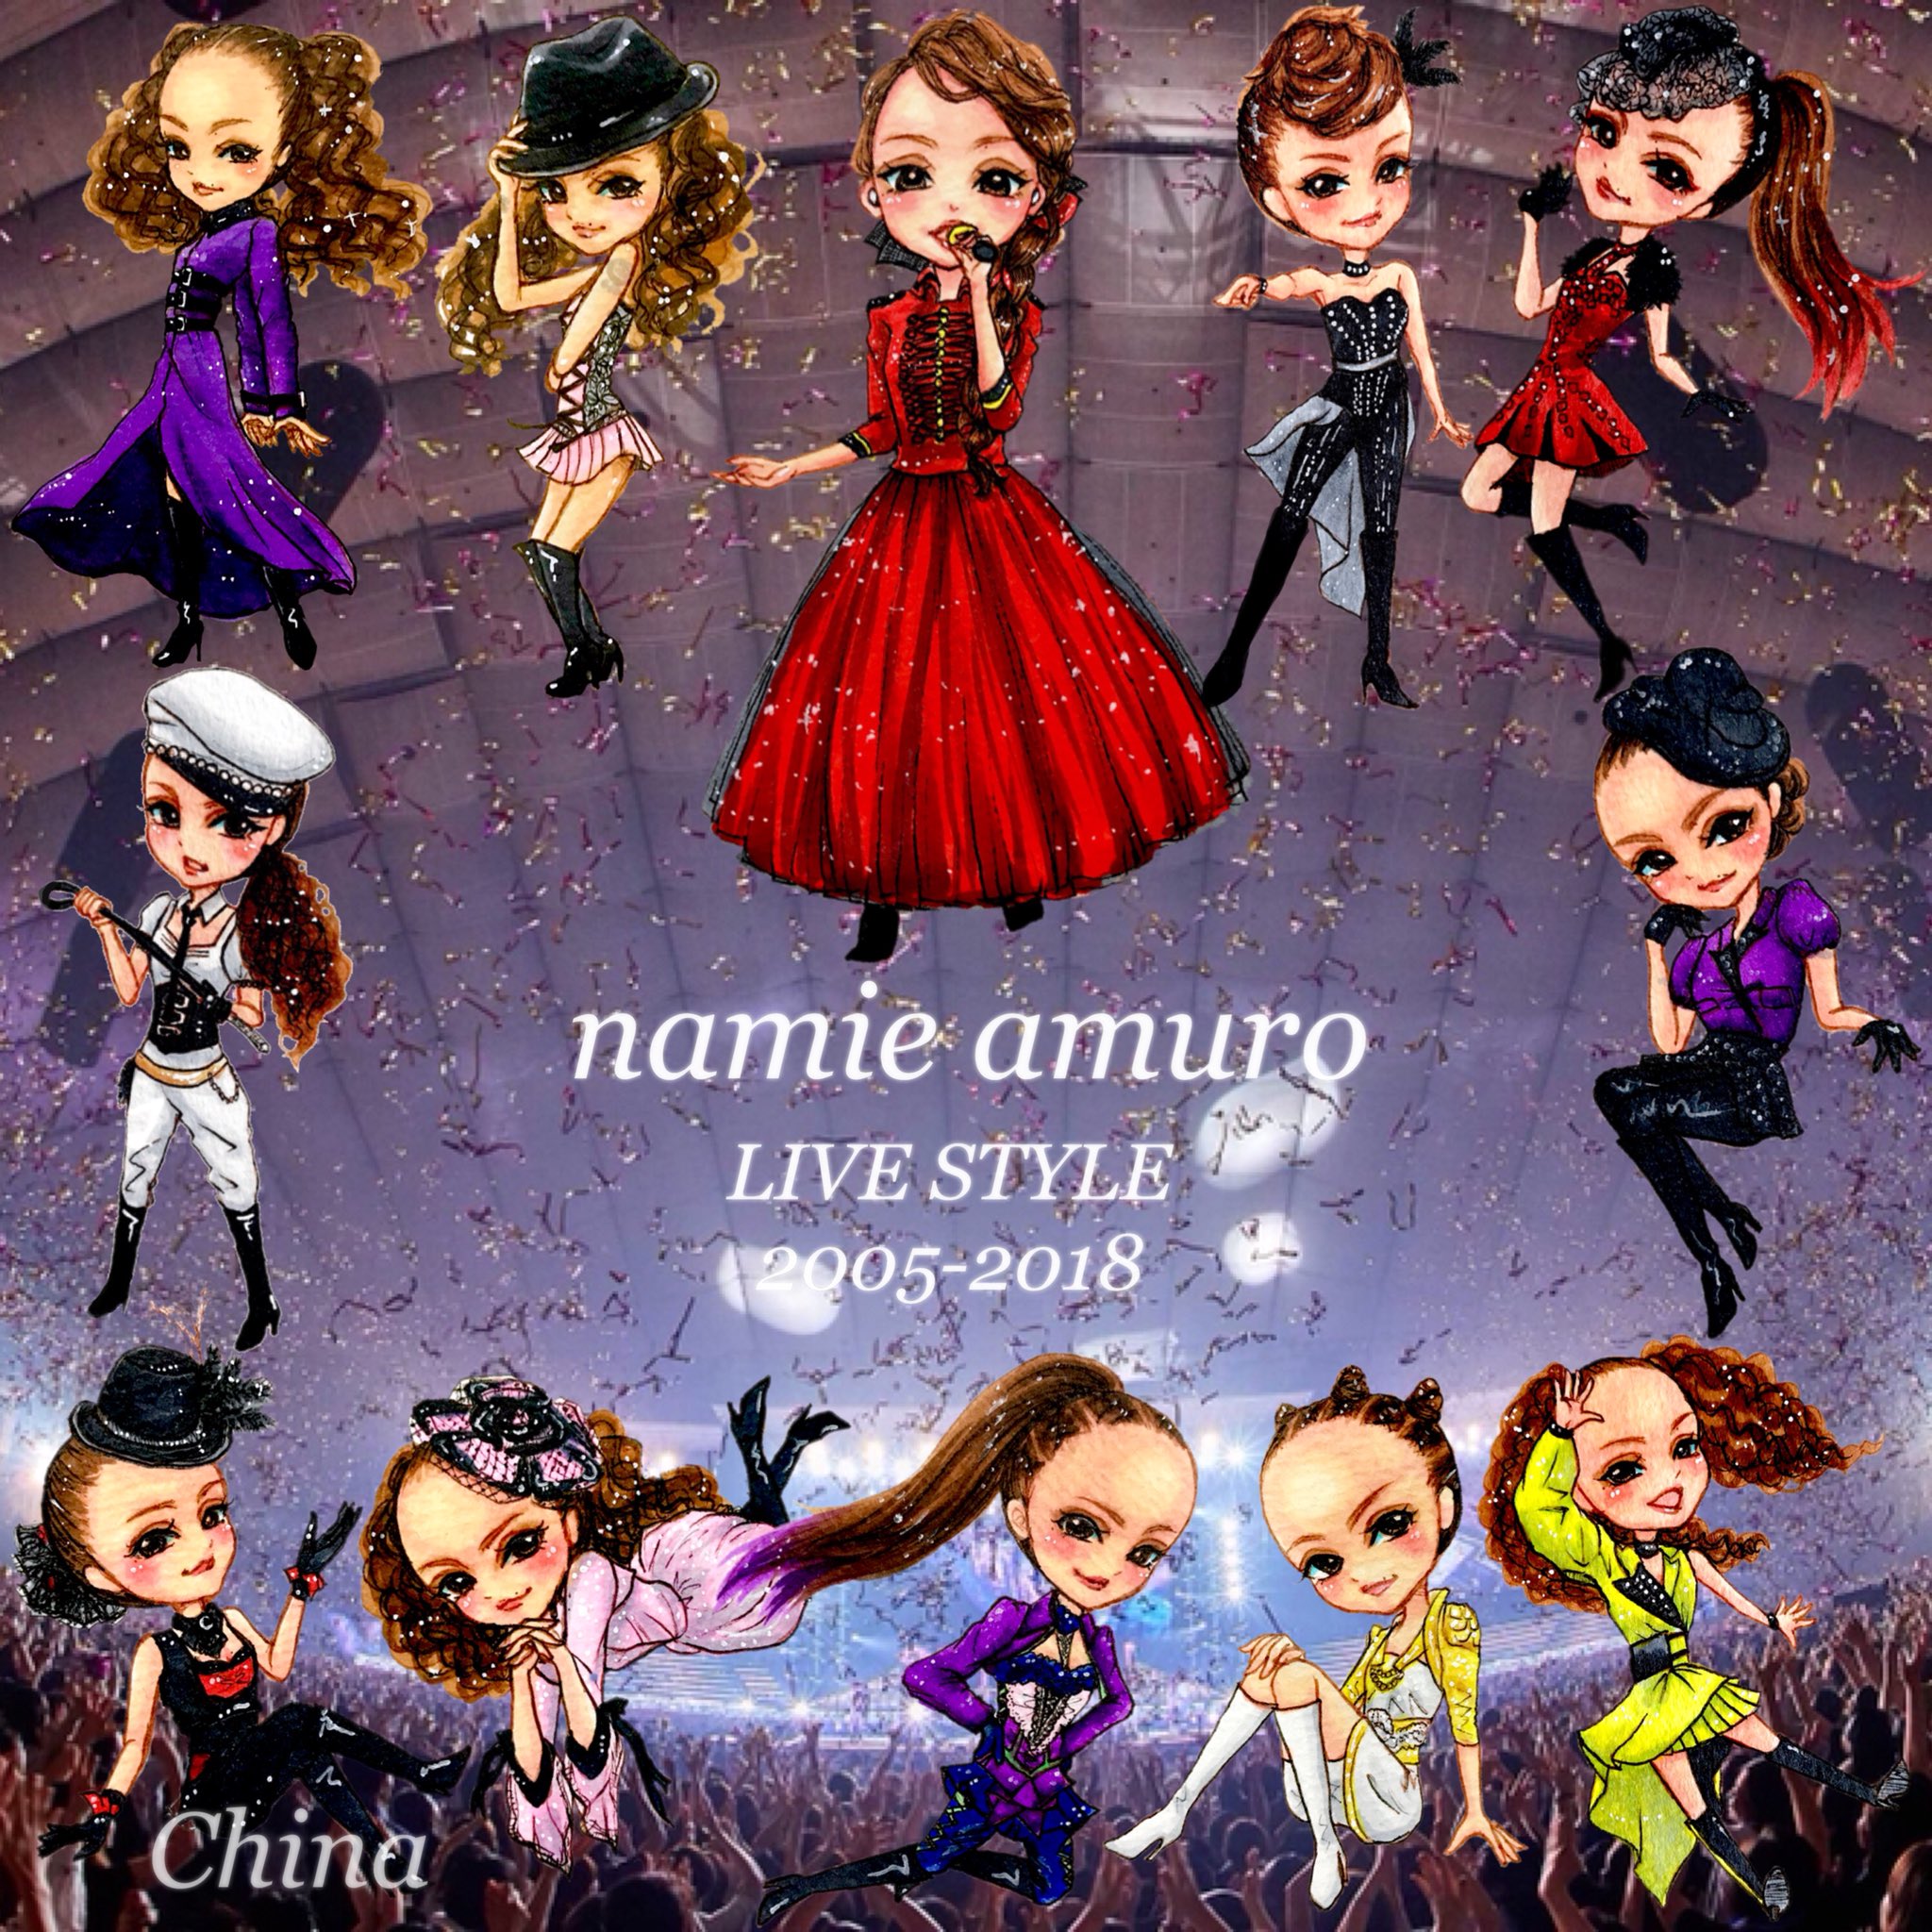 ちな Namie Amuro Live Style 05 18 Opening 安室奈美恵